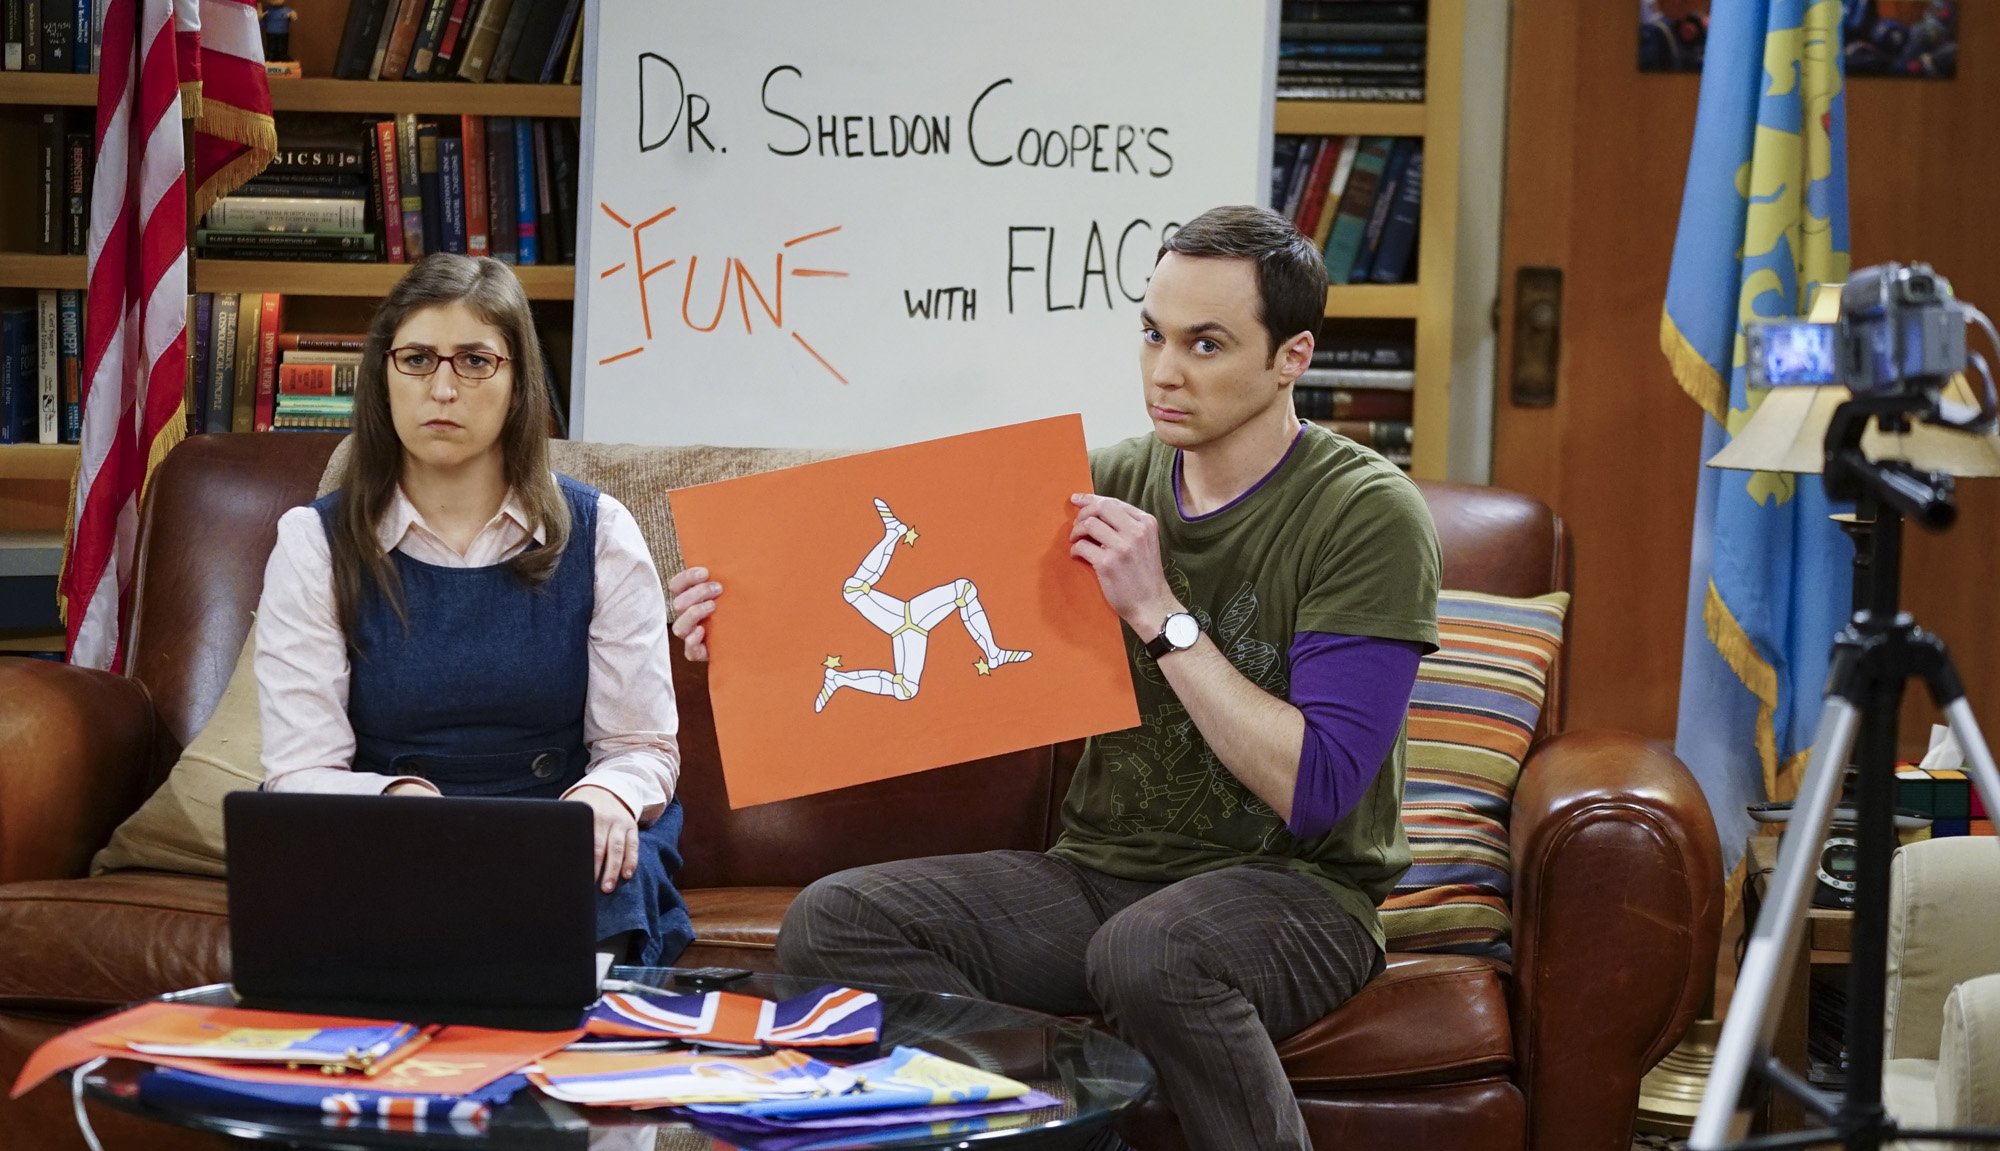 Big Bang Theory: Amy and Sheldon